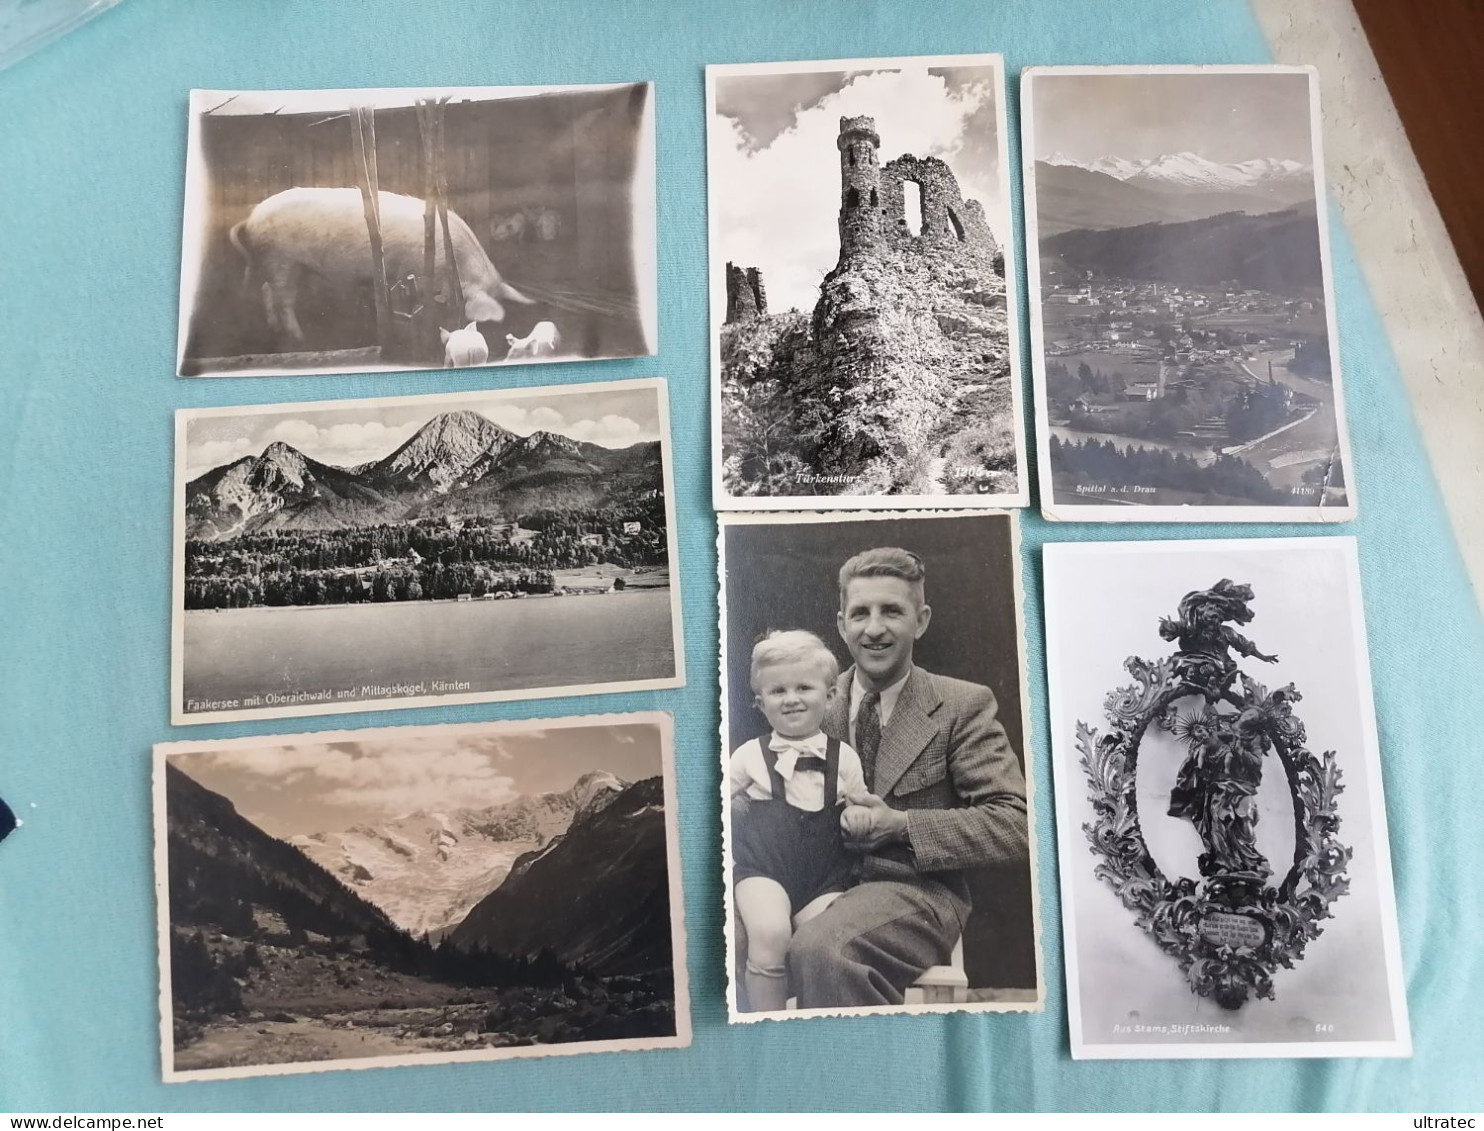 135 Stück alte Postkarten "ÖSTERREICH" Lot Konvolut Sammlung AK Ansichtskarten